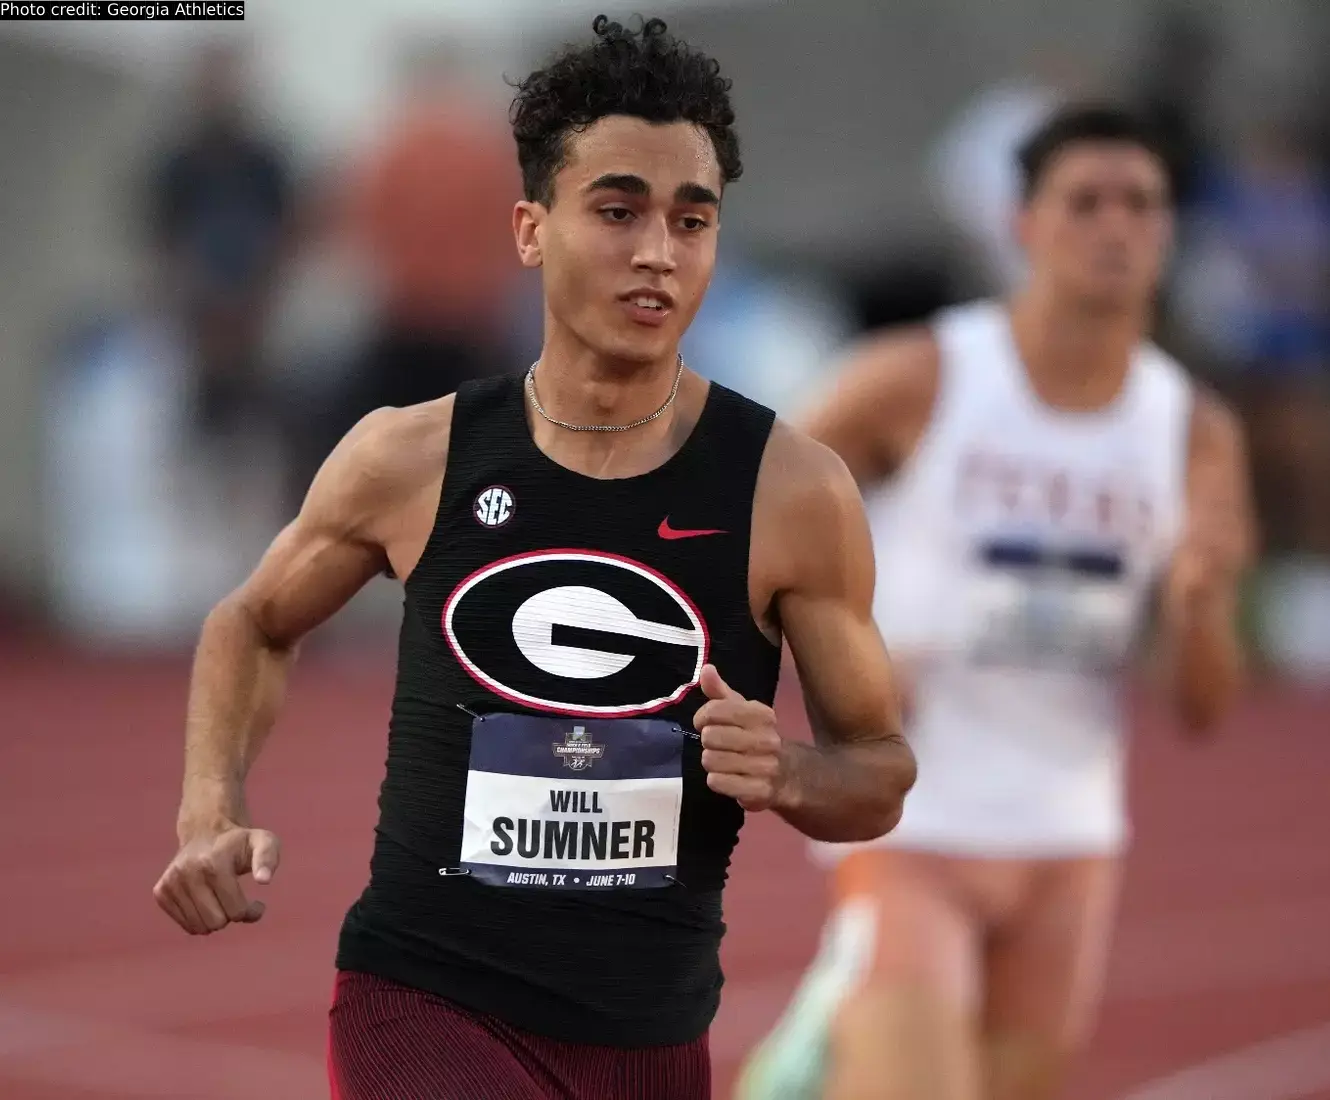 Will Sumner of Georgia in the men's 800m race